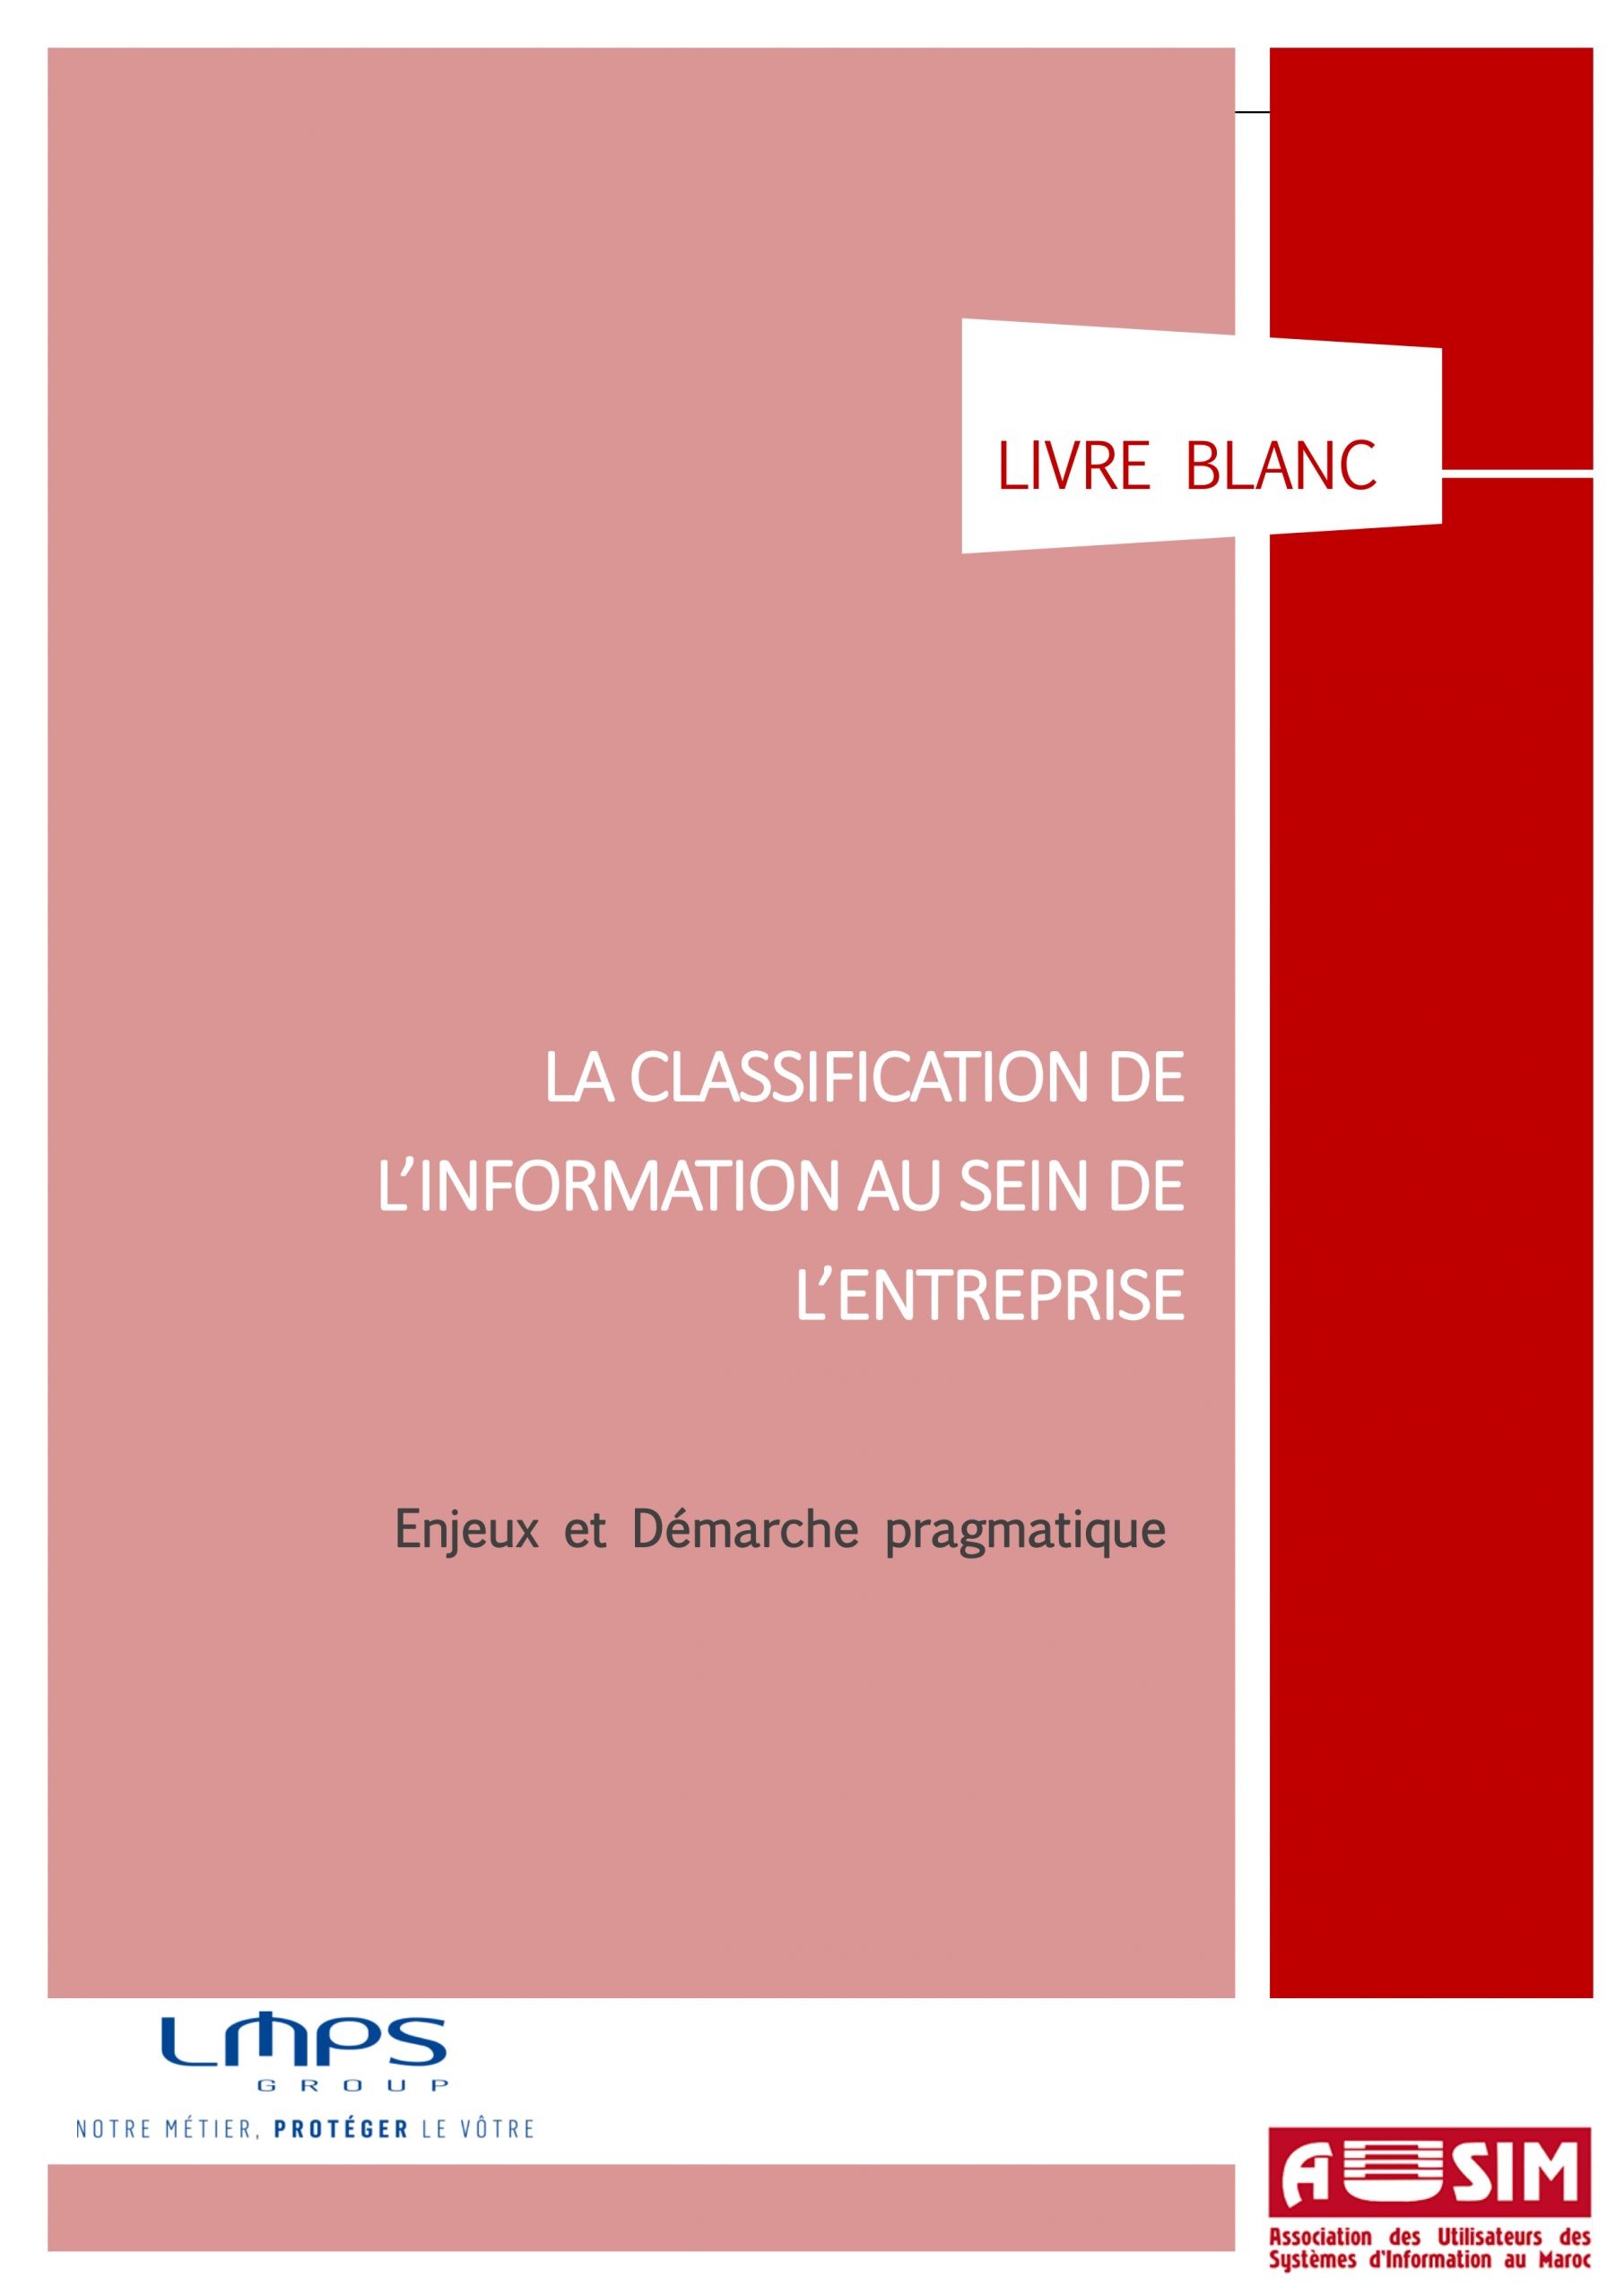 LMPS-AUSIM-Livre-Blanc-Classification-des-Données